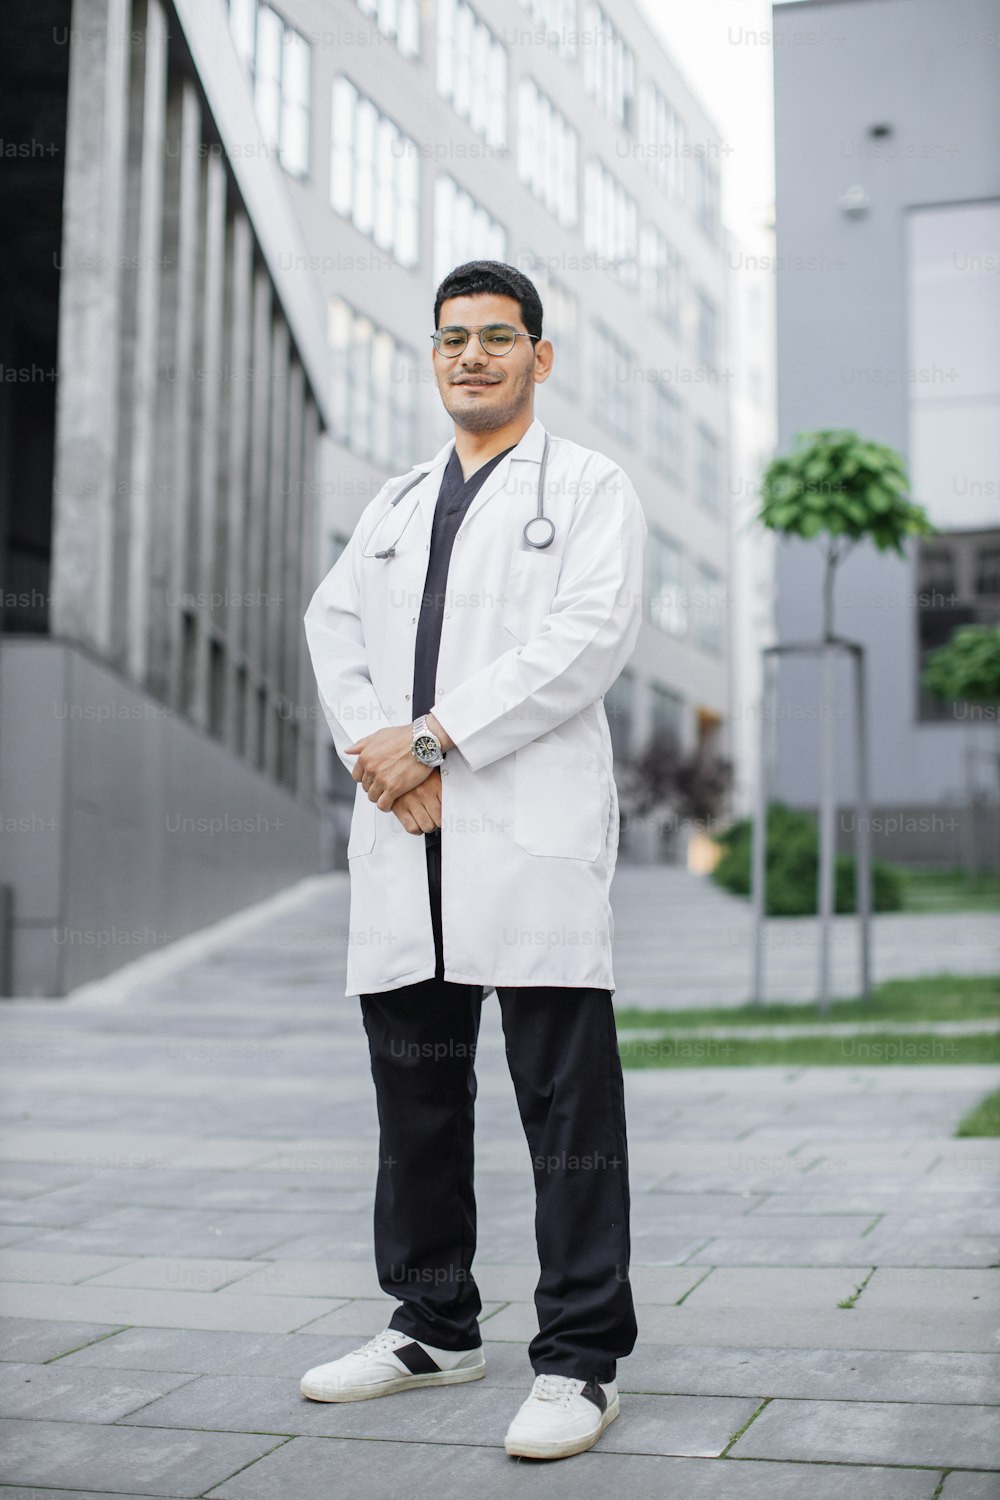 Un joven y guapo médico de Arabia Saudita sonriendo afuera del hospital. Retrato de cuerpo entero de un estudiante de medicina masculino con bata blanca, posando frente al edificio o clínica moderna de la universidad